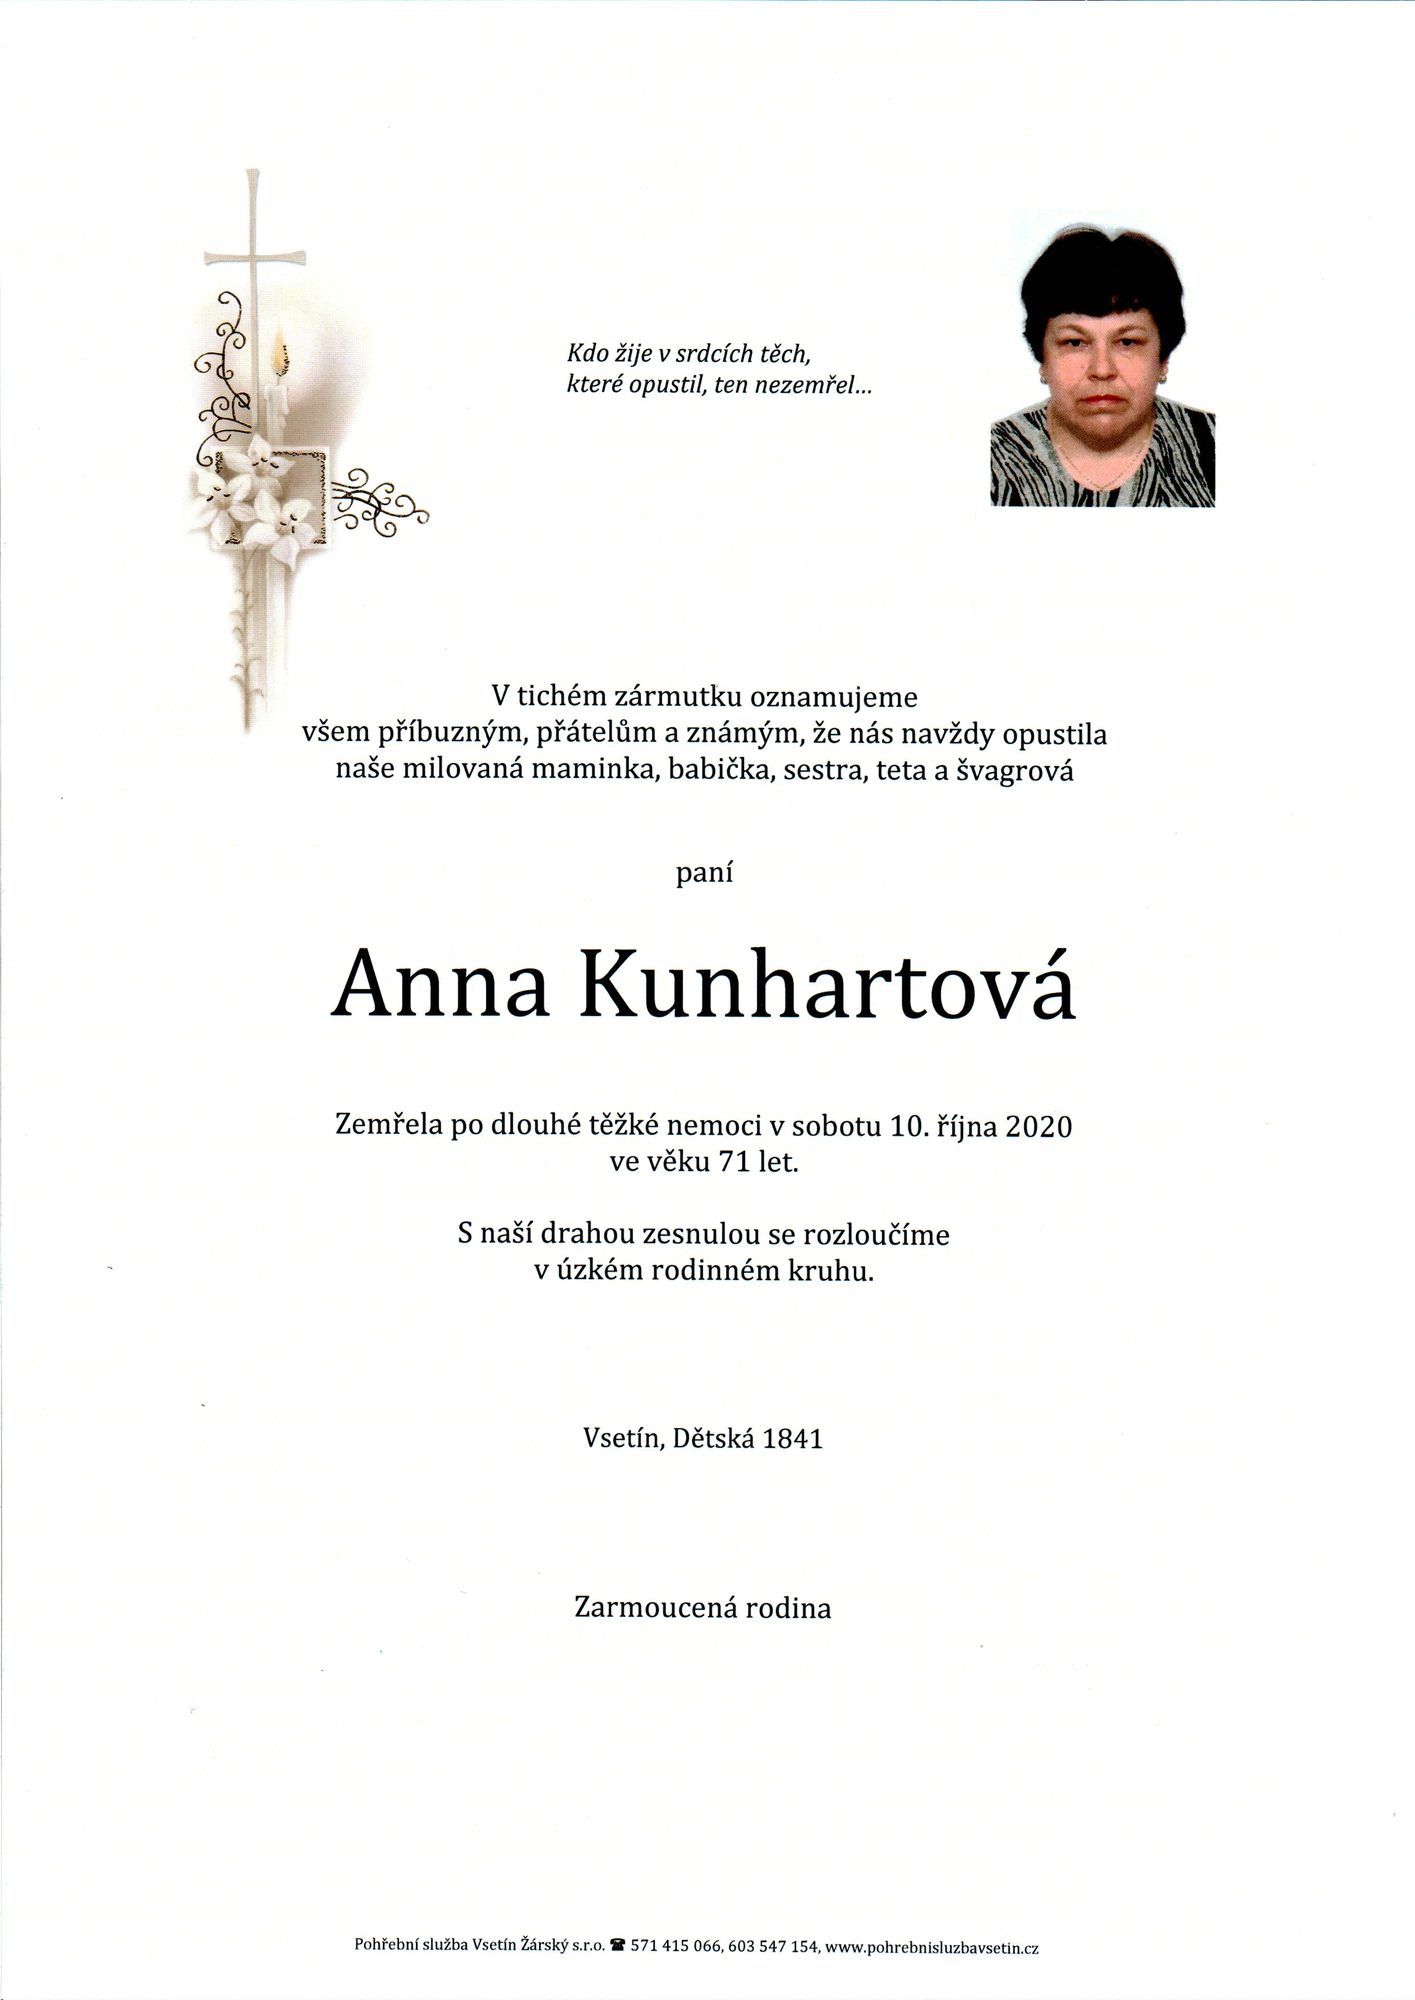 Anna Kunhartová